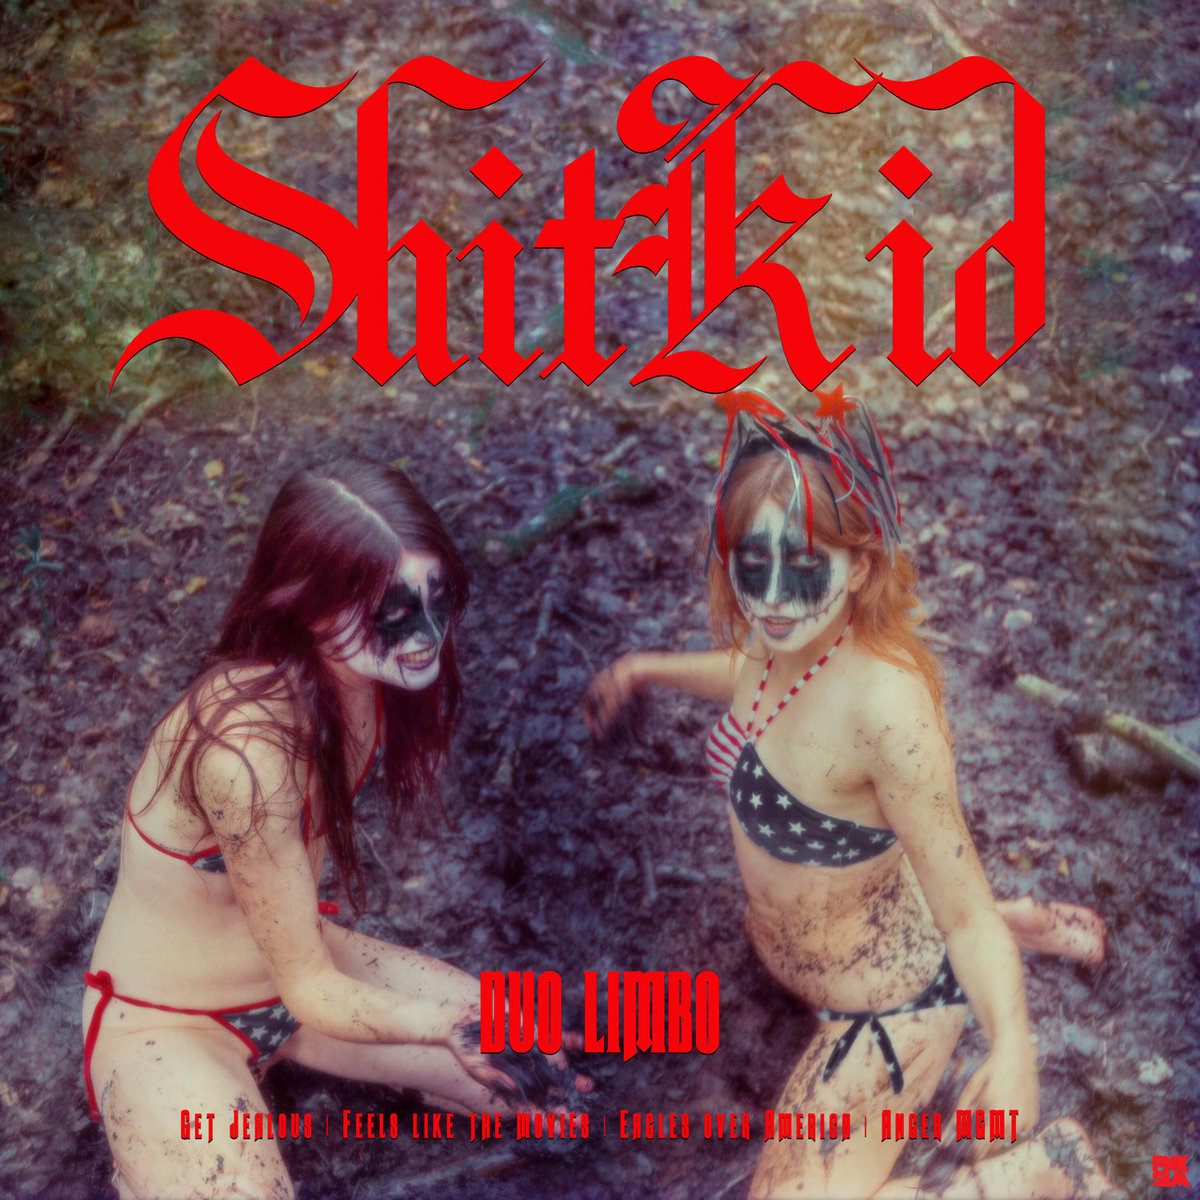 ShitKid - Duo Limbo​/​"Mellan himmel å helvete"